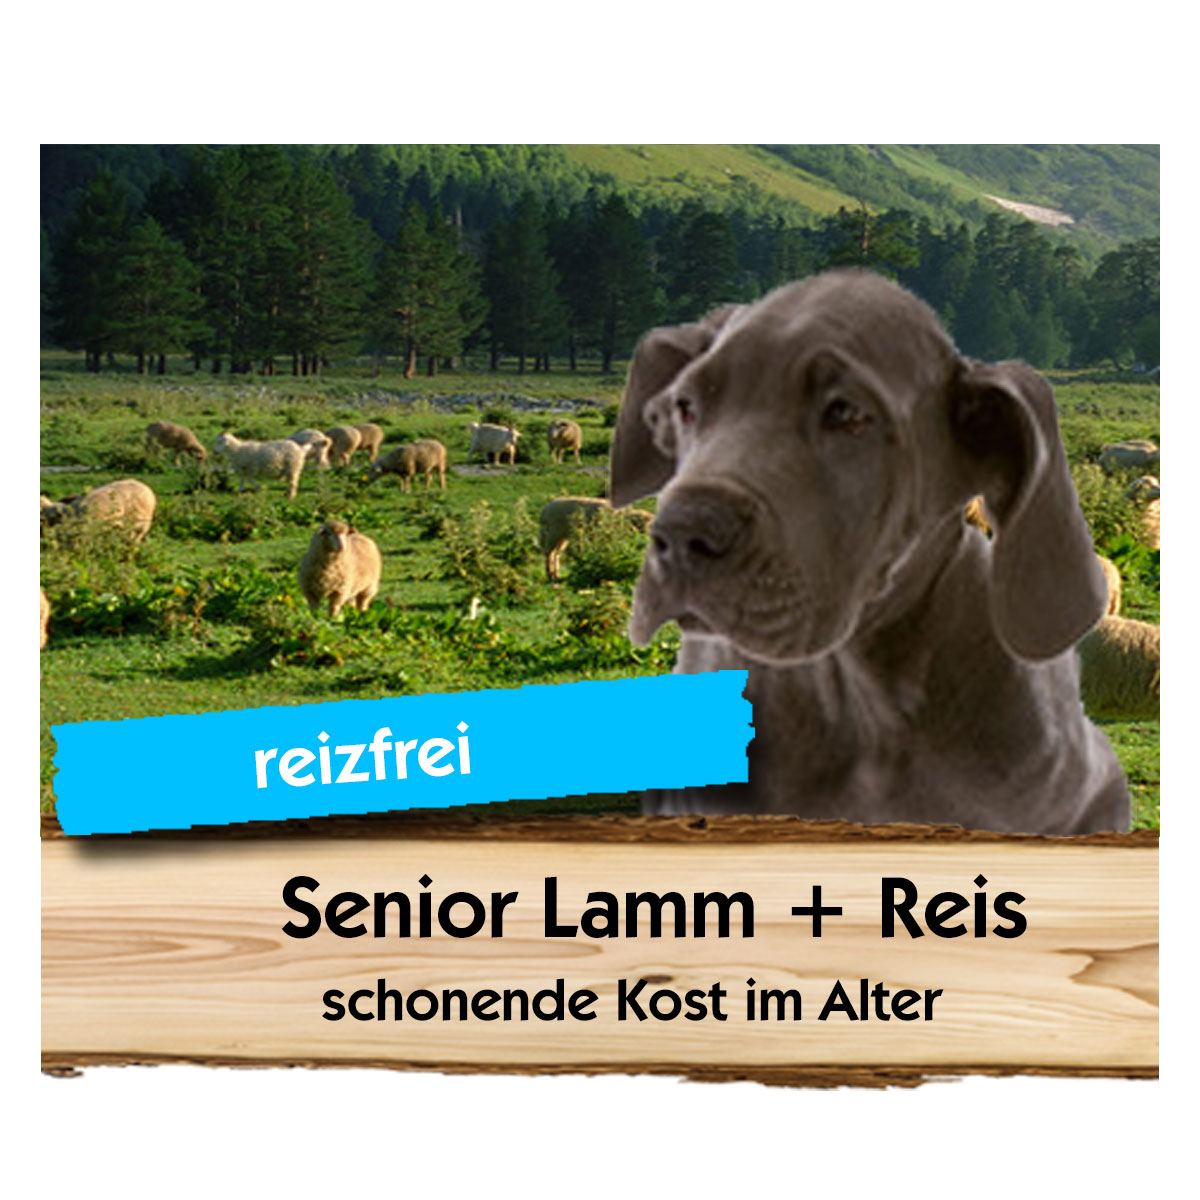 Senior Lamm + Reis